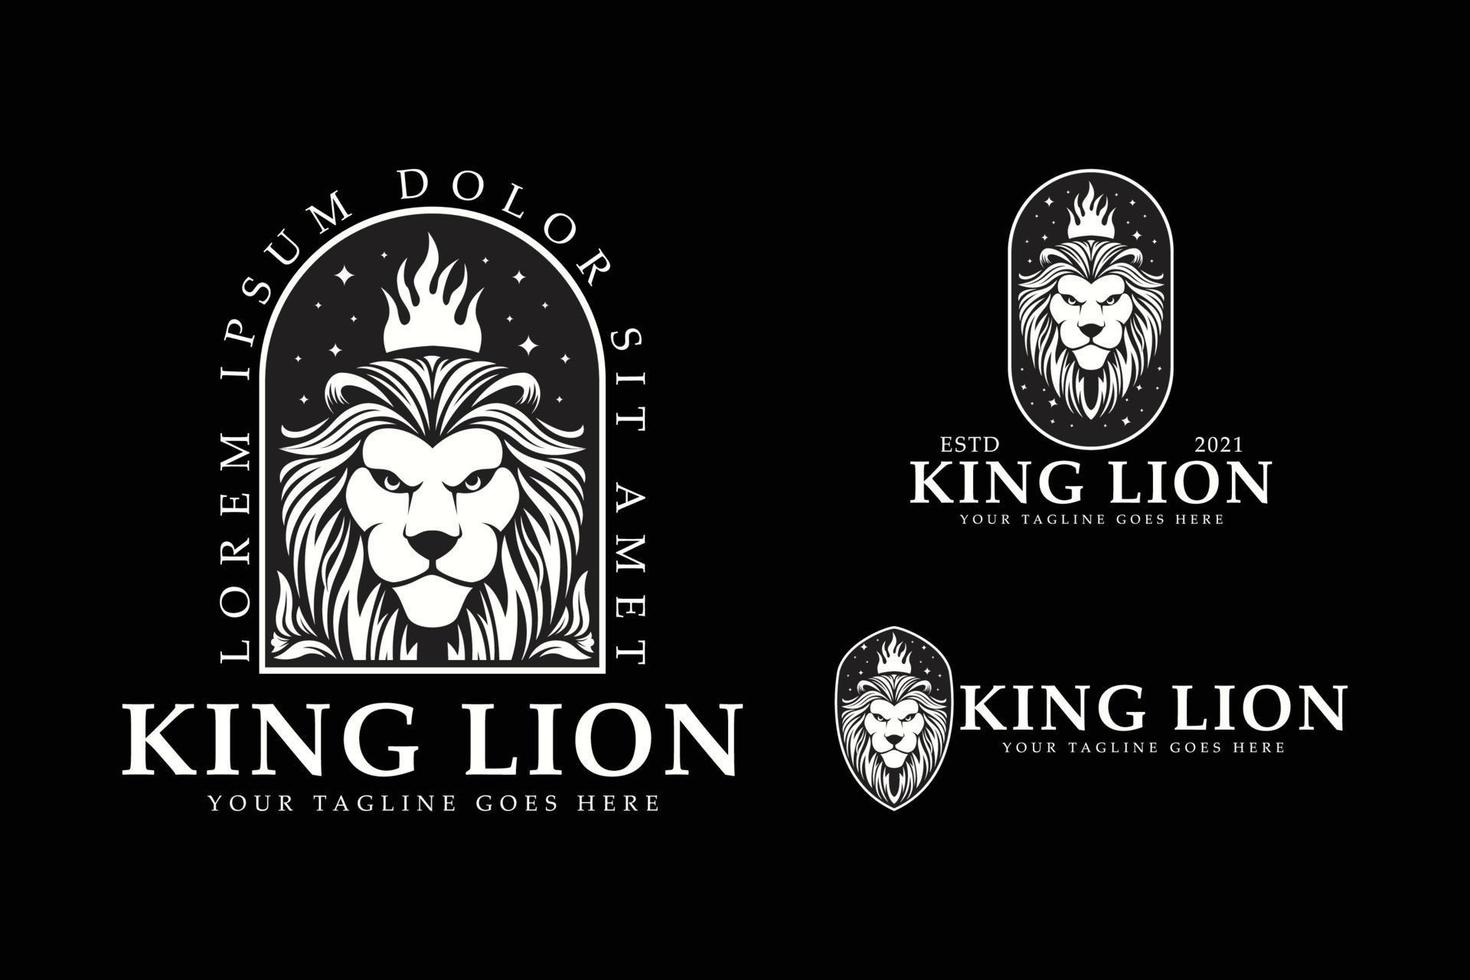 koning leeuw logo vector illustratie set bundel sjabloonontwerp op zwarte achtergrond